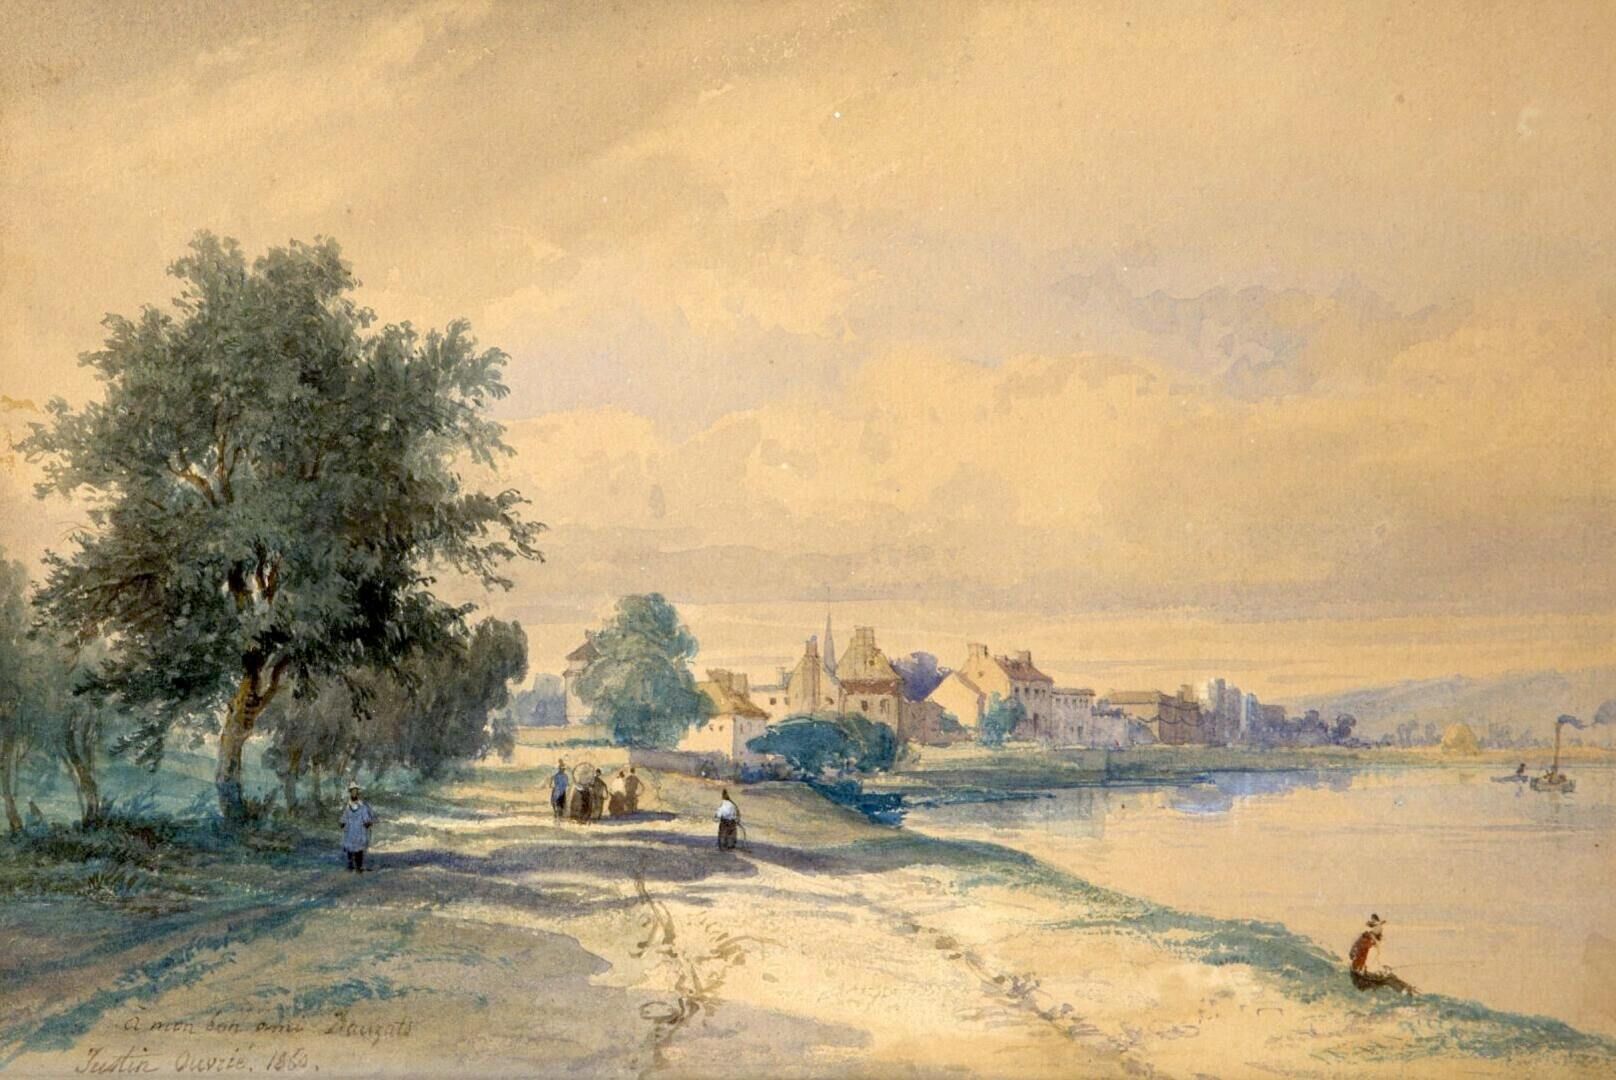 Null 贾斯汀-皮埃尔-乌弗莱 (1806-1879)

河边热闹的道路

已签名的水彩画，日期为1860年，并献给 "给我的好朋友Dauzat"，左下角。
&hellip;